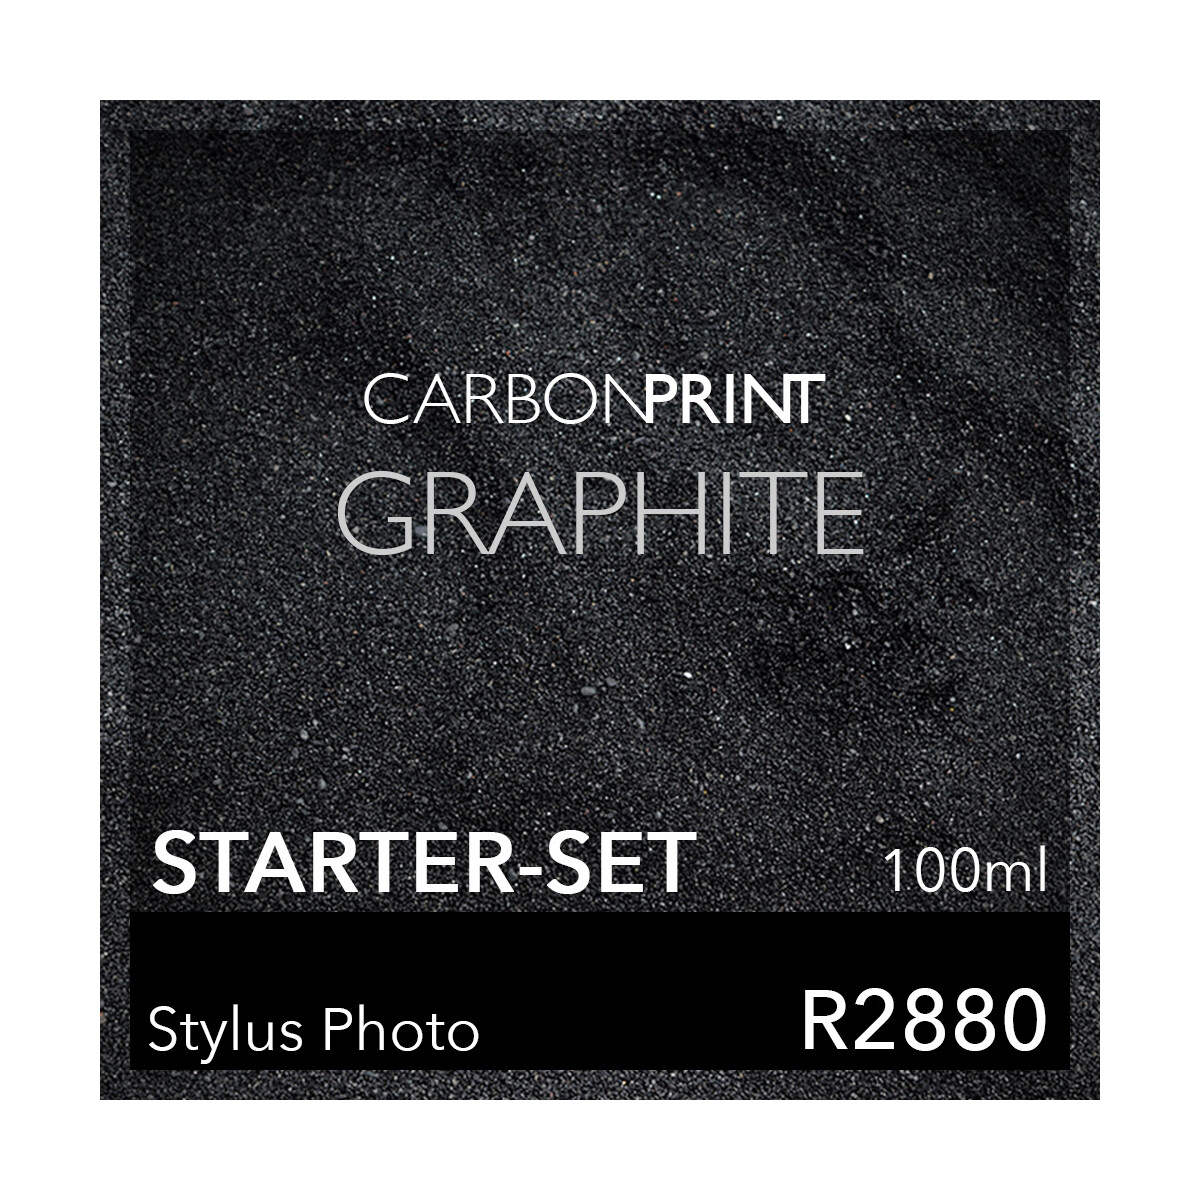 Starter-Set Carbonprint Graphite für Photo R2880...